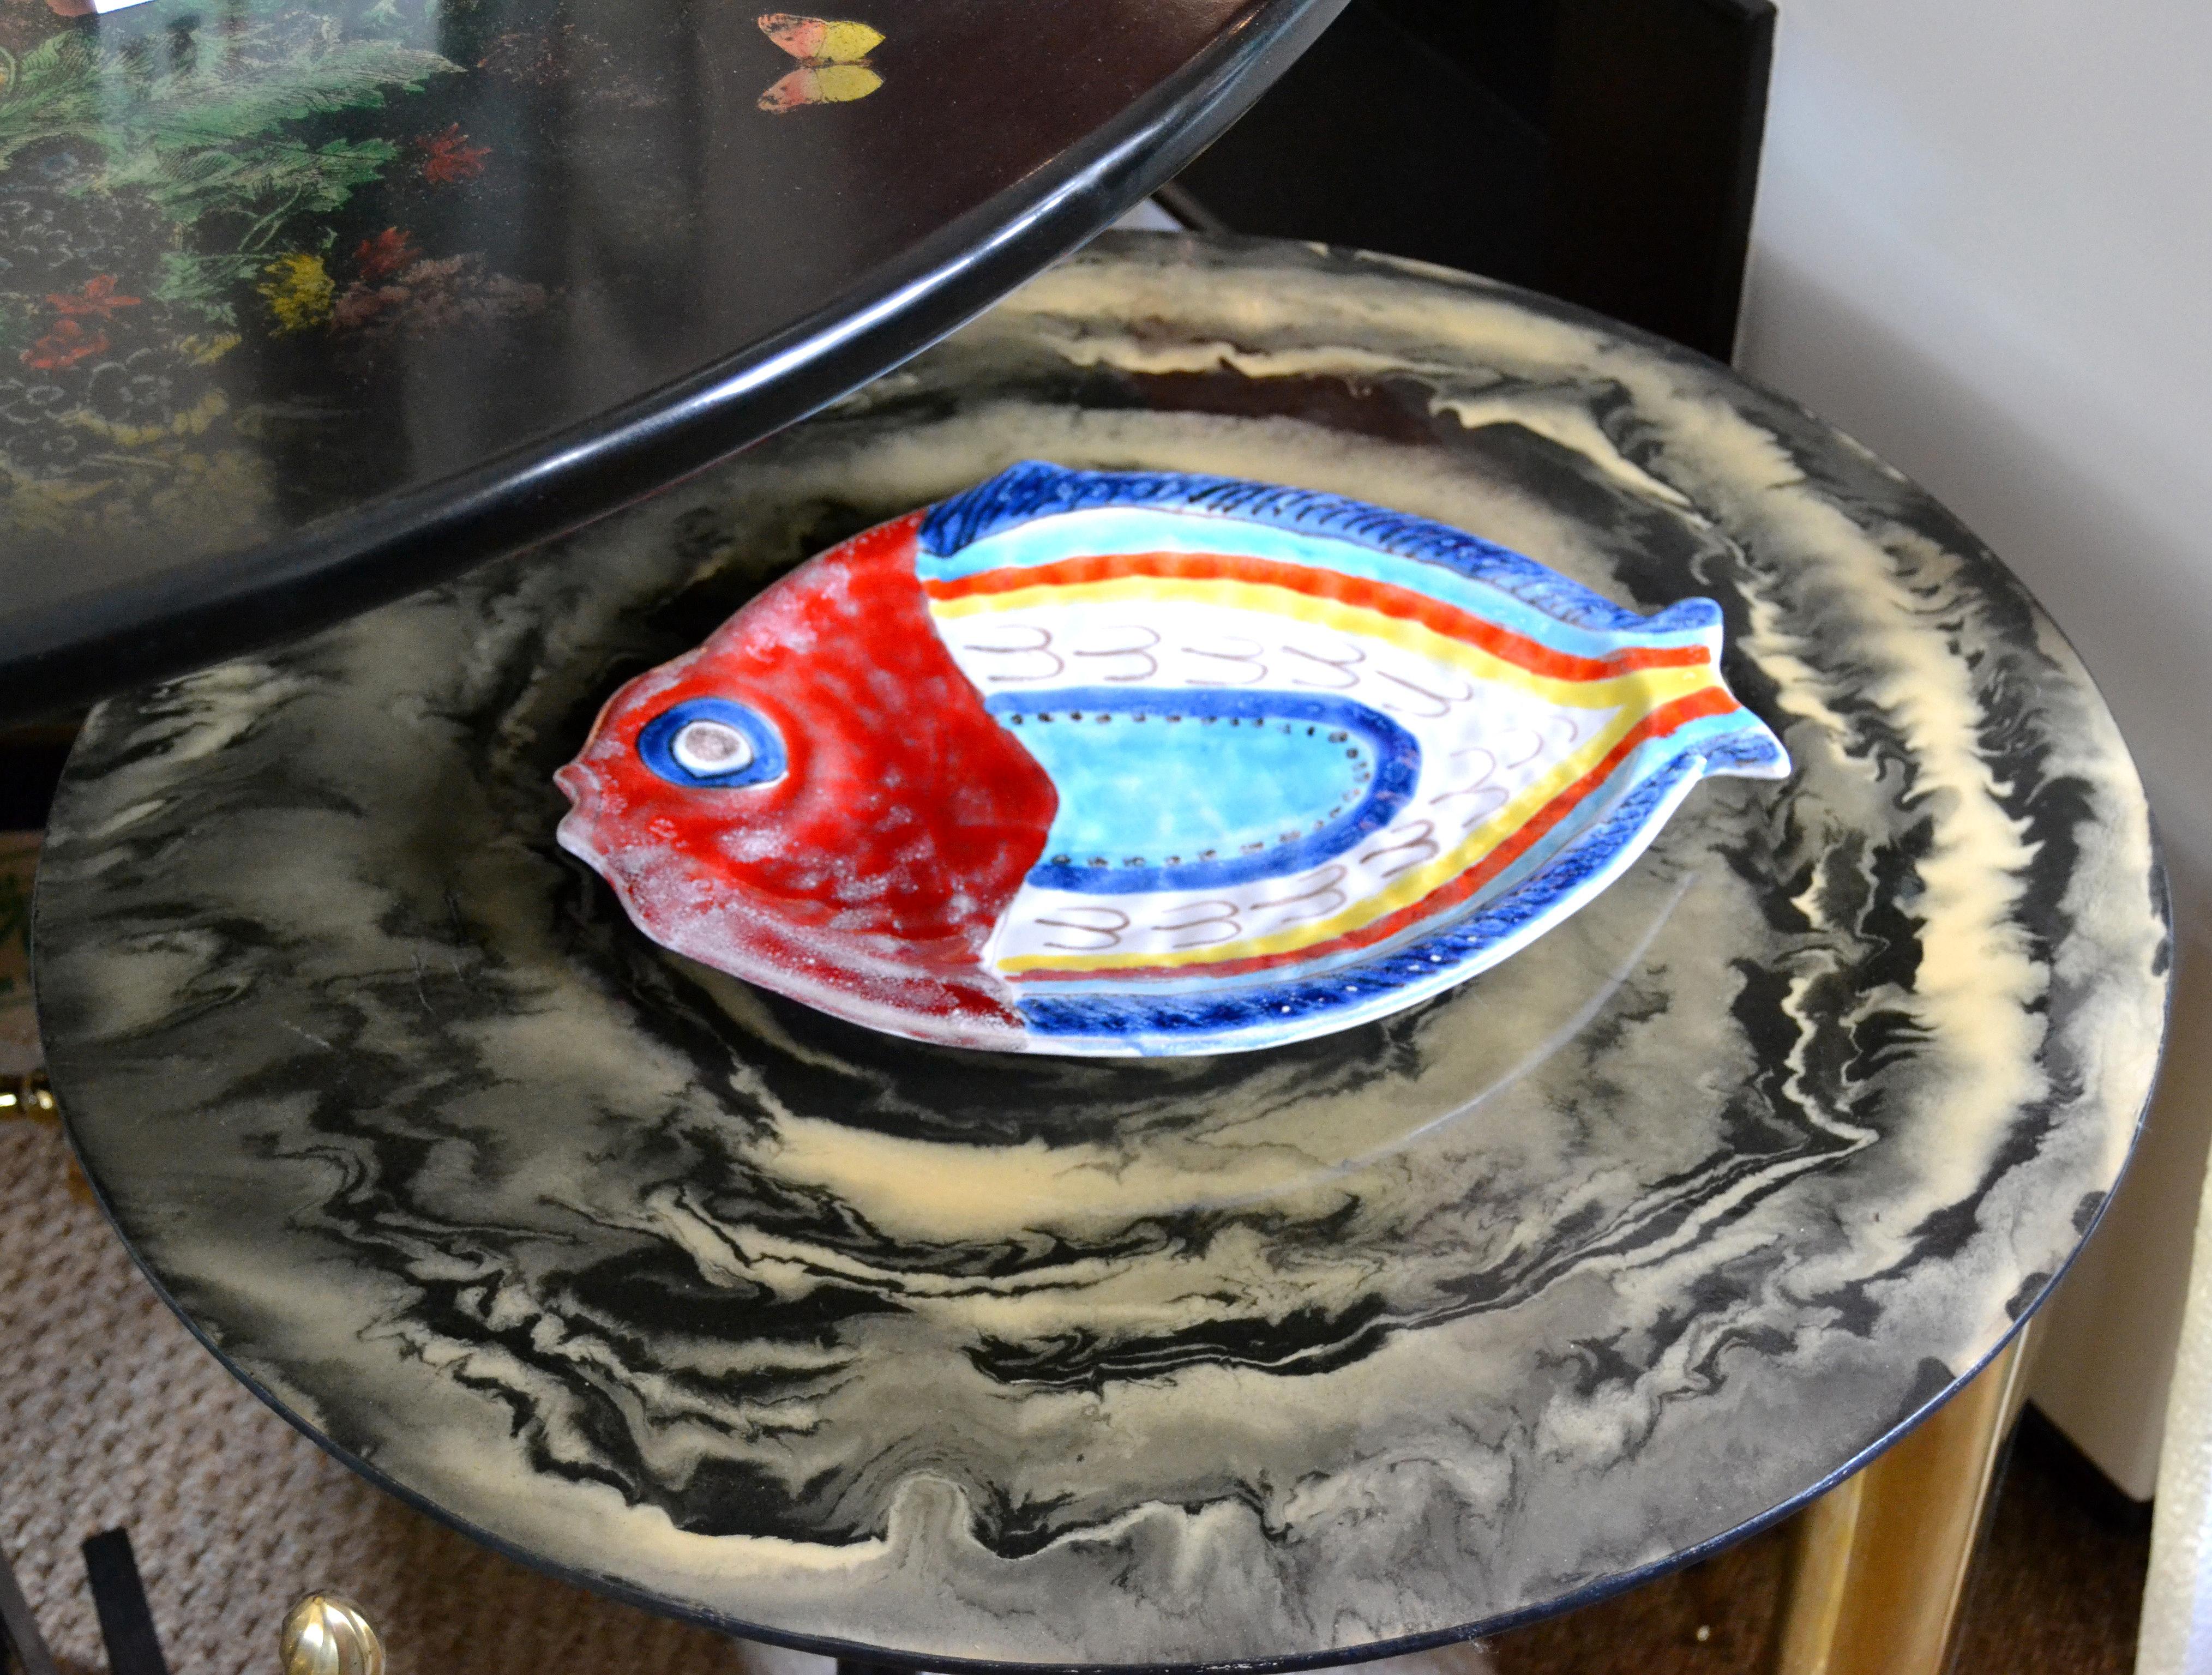 Original italienische Giovanni DeSimone handbemalte Keramik, Fischteller, Servierplatte.
Der Teller ist glasiert und sehr bunt.
Gezeichnet und nummeriert auf der Unterseite: 